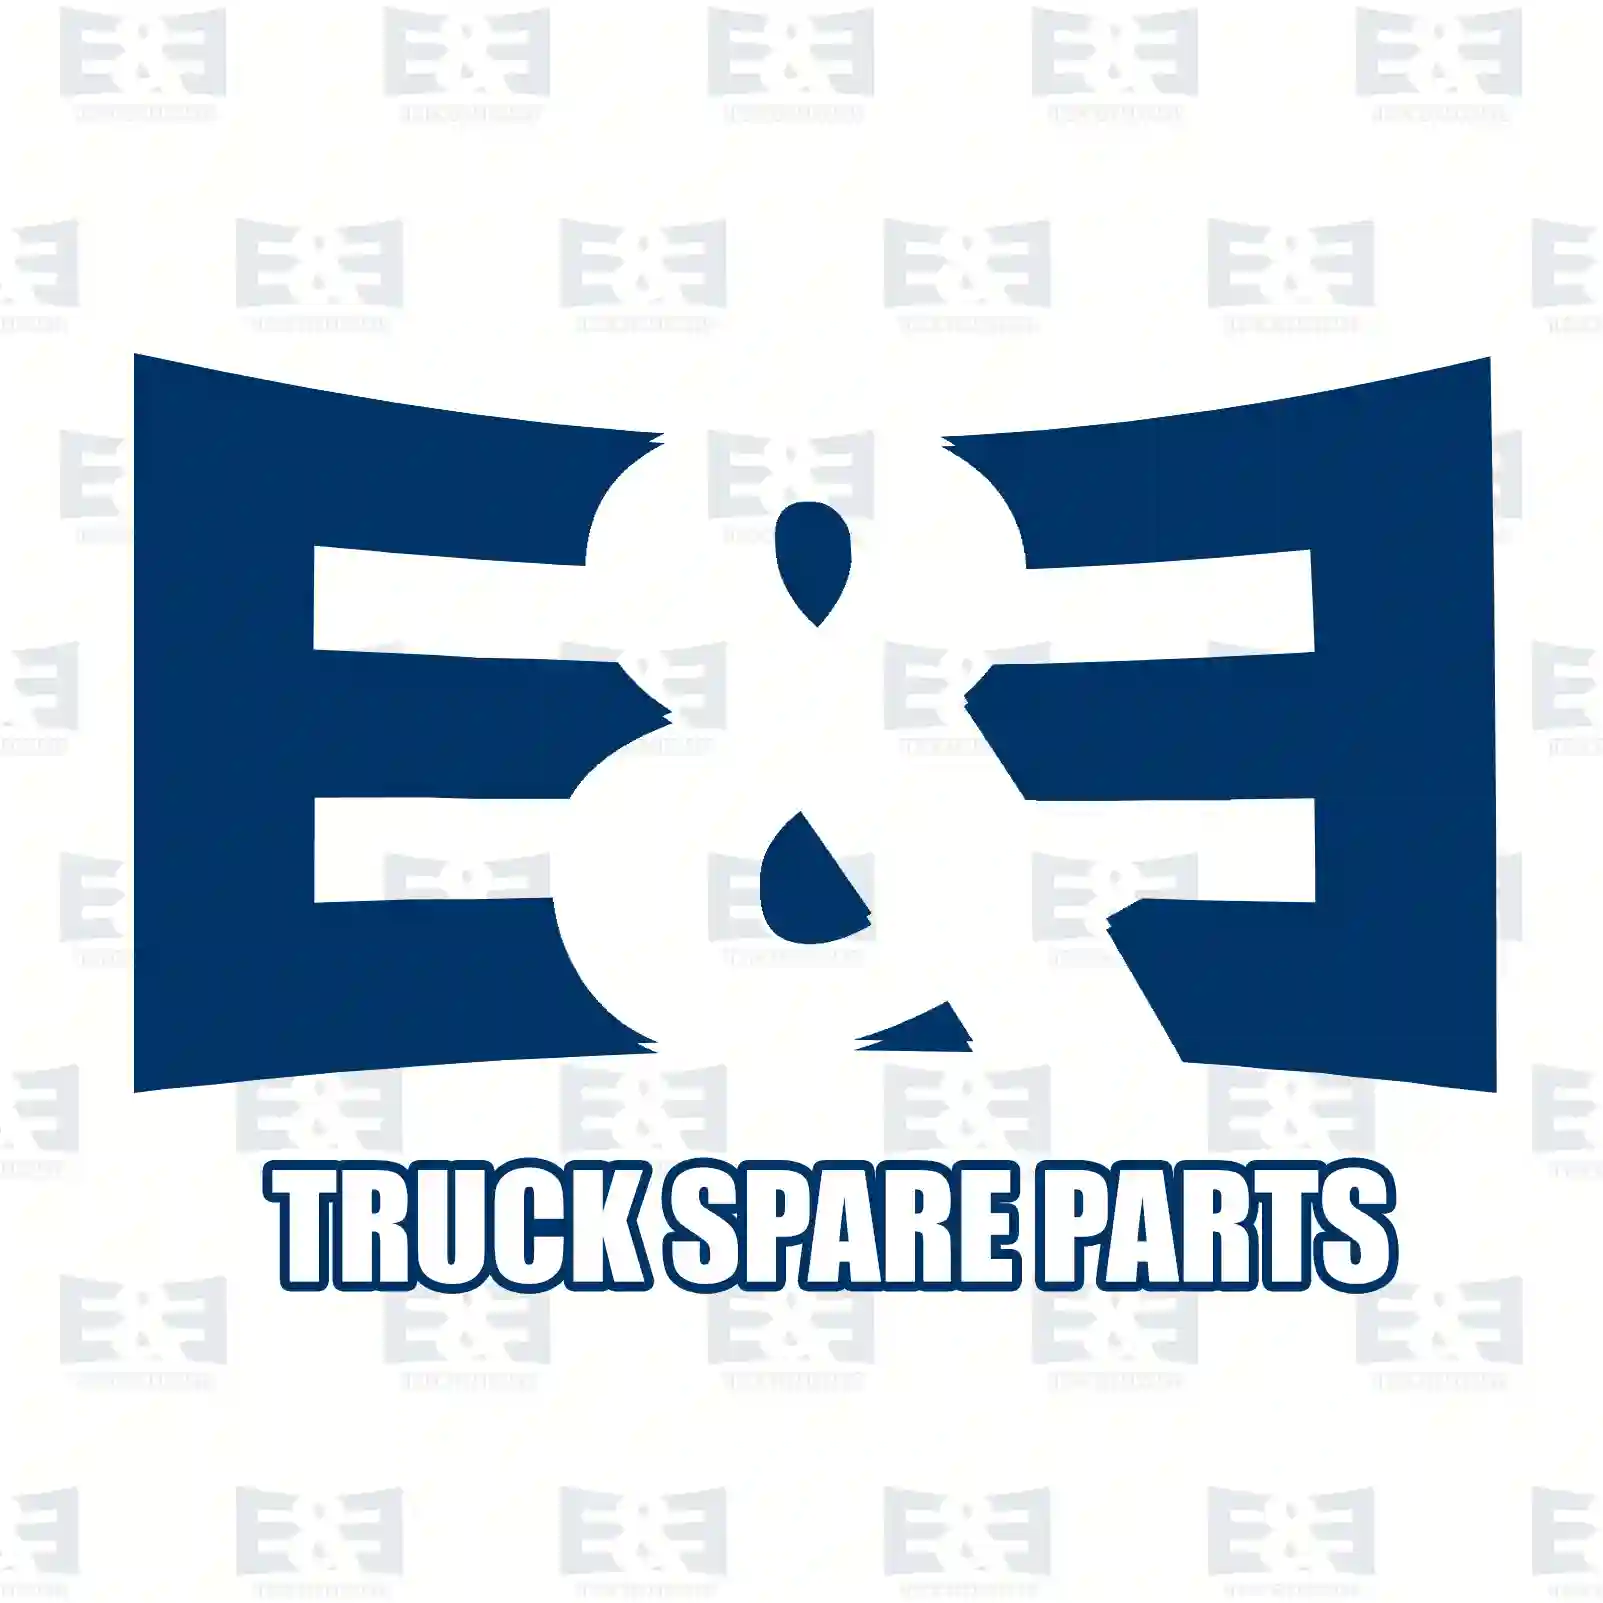 Front grill slot, 2E2280035, 1362869, ZG60821-0008 ||  2E2280035 E&E Truck Spare Parts | Truck Spare Parts, Auotomotive Spare Parts Front grill slot, 2E2280035, 1362869, ZG60821-0008 ||  2E2280035 E&E Truck Spare Parts | Truck Spare Parts, Auotomotive Spare Parts